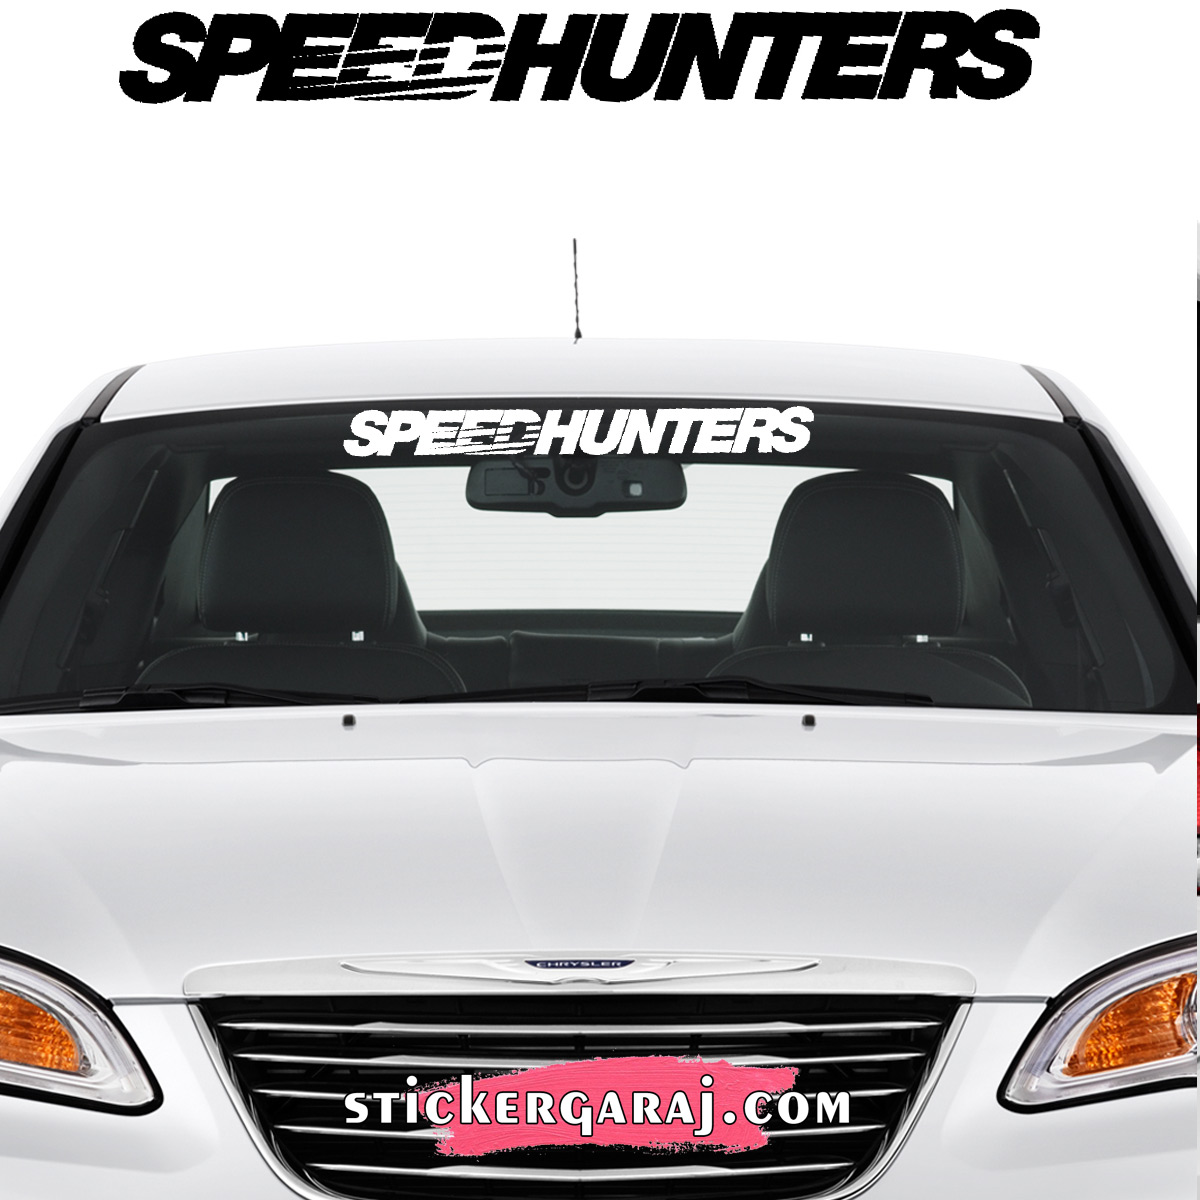 Audi oto sticker - Audi cam sticker - speedhunters